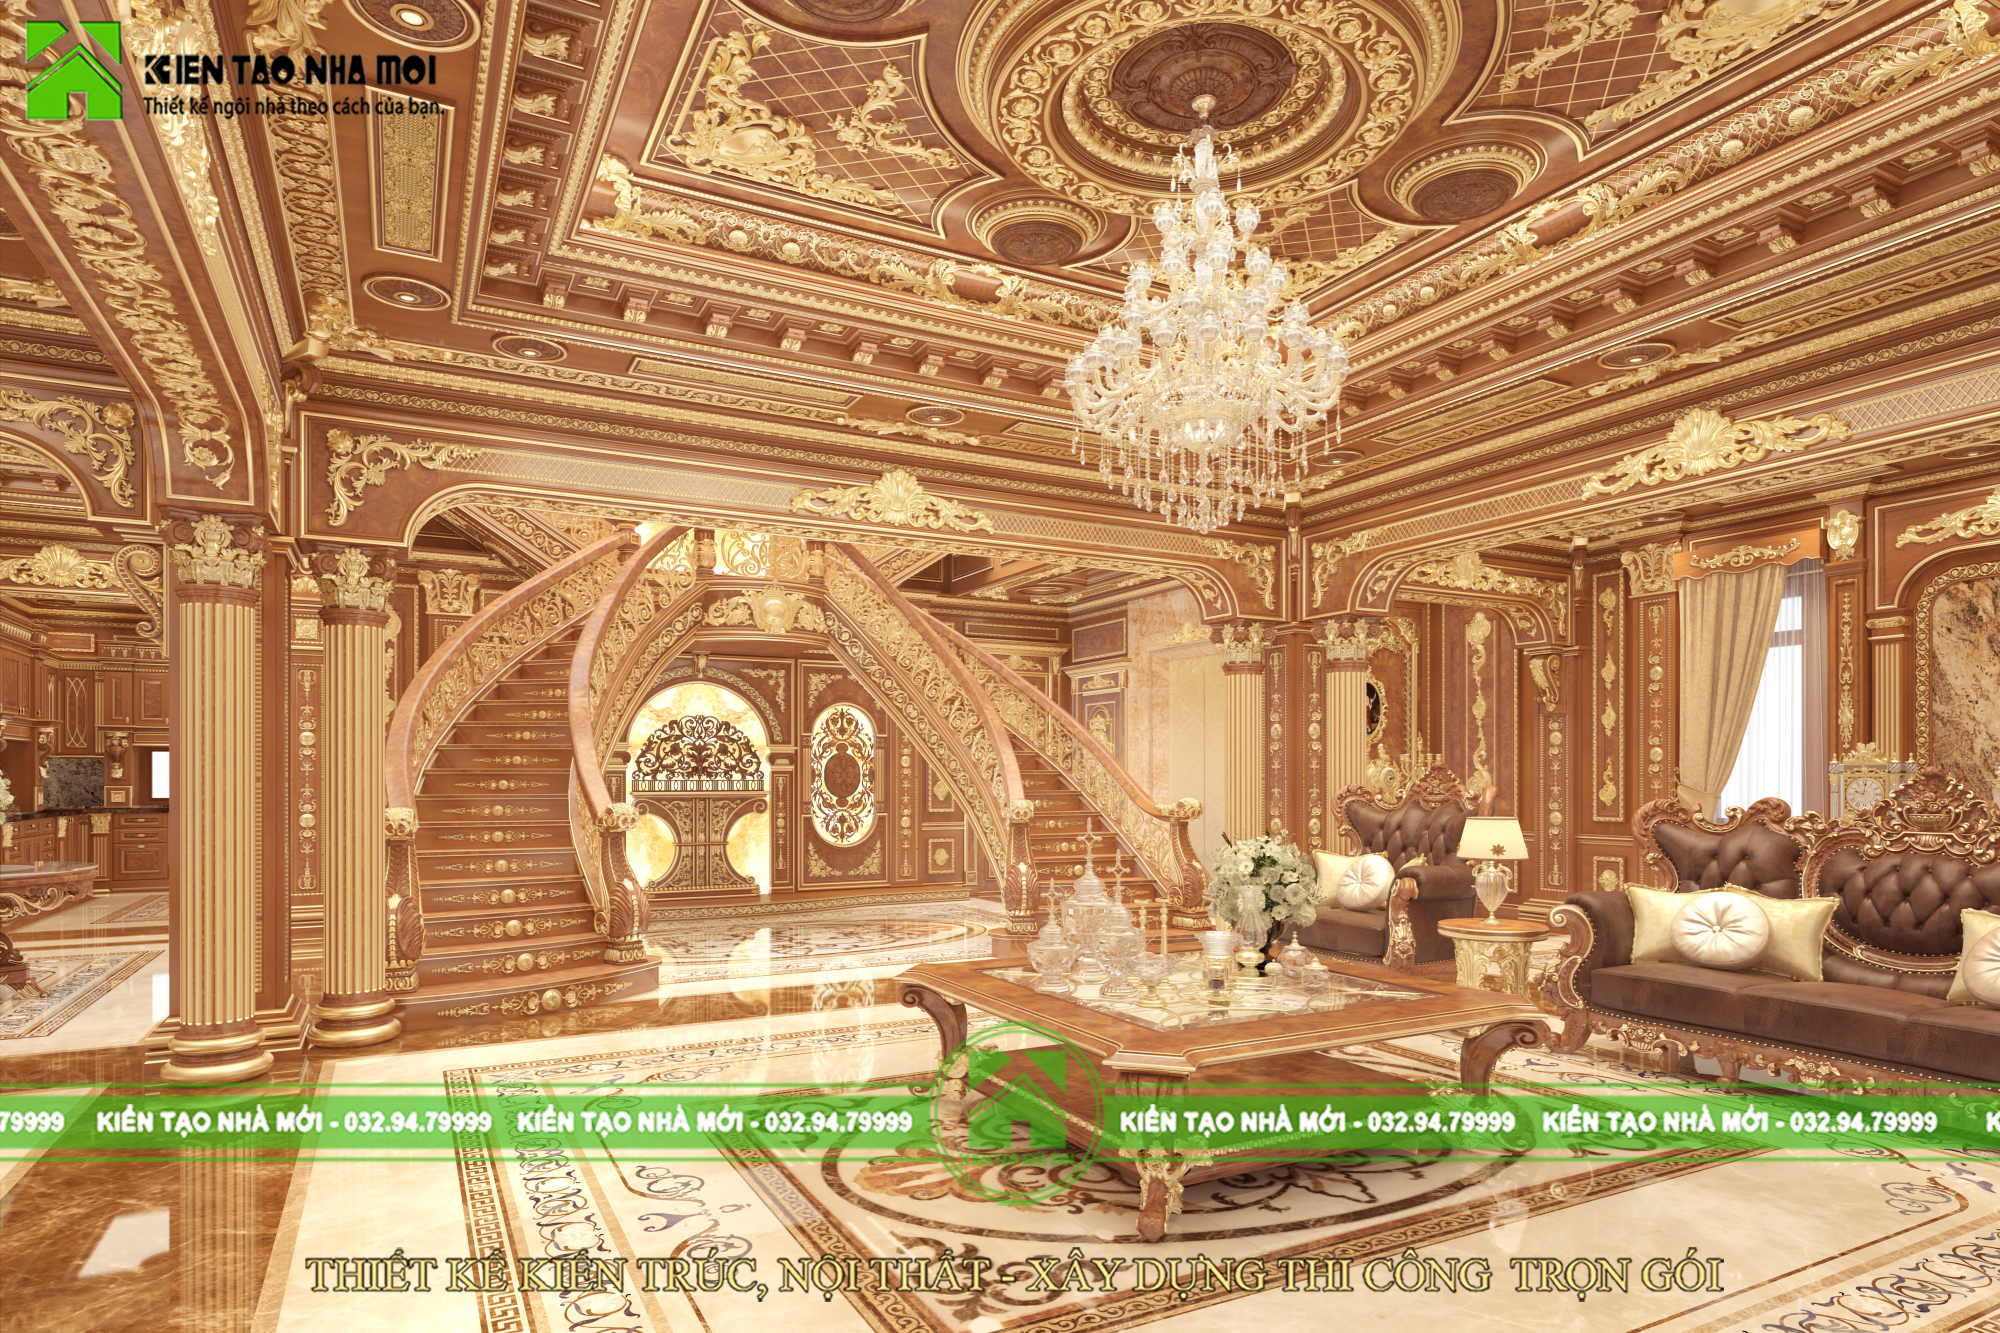 Thiết kế nội thất Biệt Thự tại Lâm Đồng Thiết kế nội thất lâu đài đẳng cấp cổ điển kiểu Pháp, hoa lệ tại Đà Lạt LD1835 1589170682 5